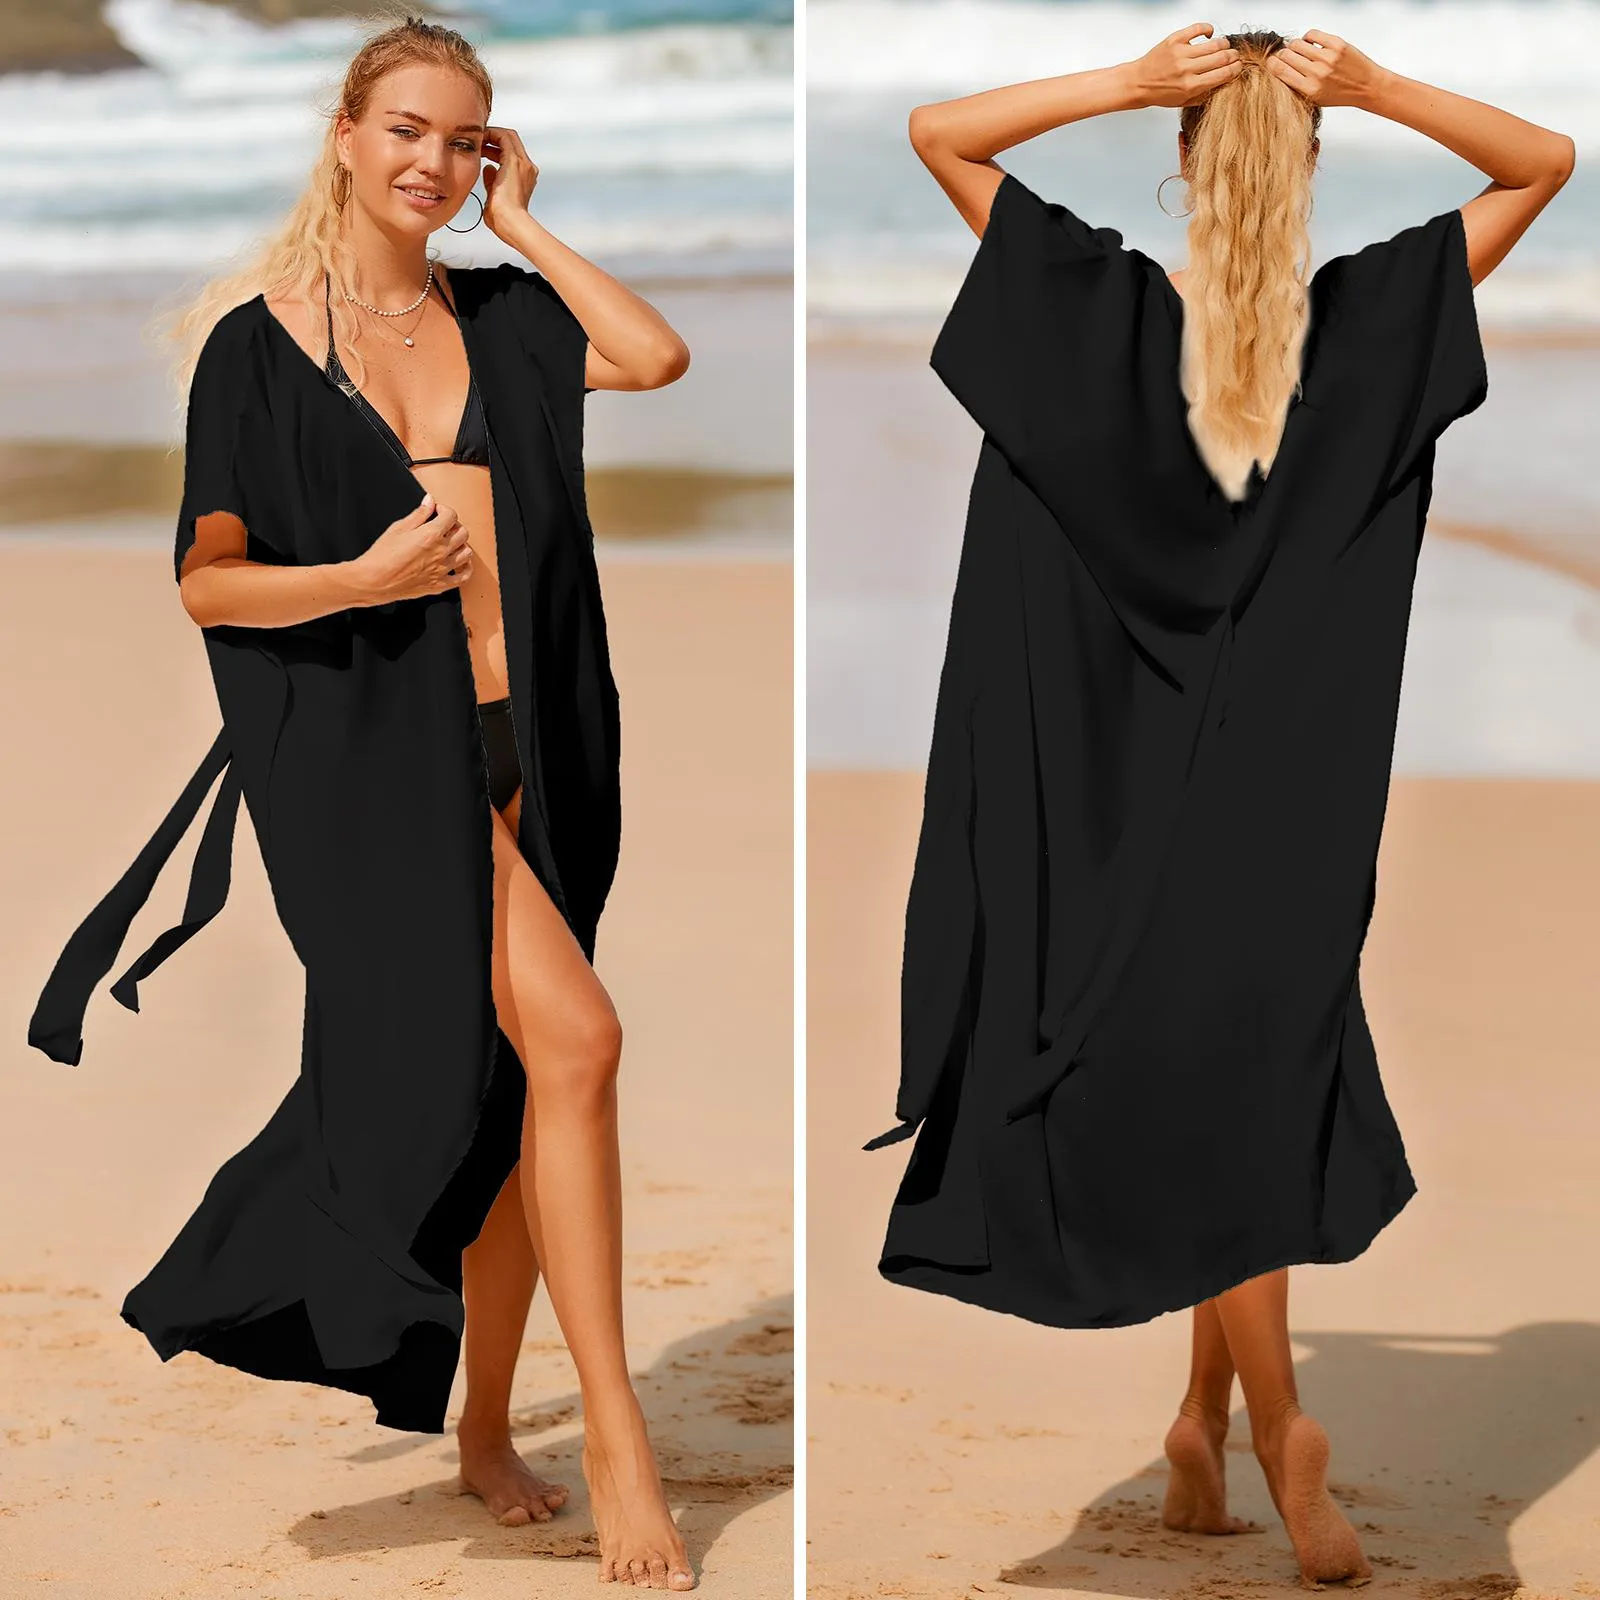 Mujer verano delgada trajes de baño Playa de cárdigan de encaje suelto vestido de protección solar de la costa blusa larga